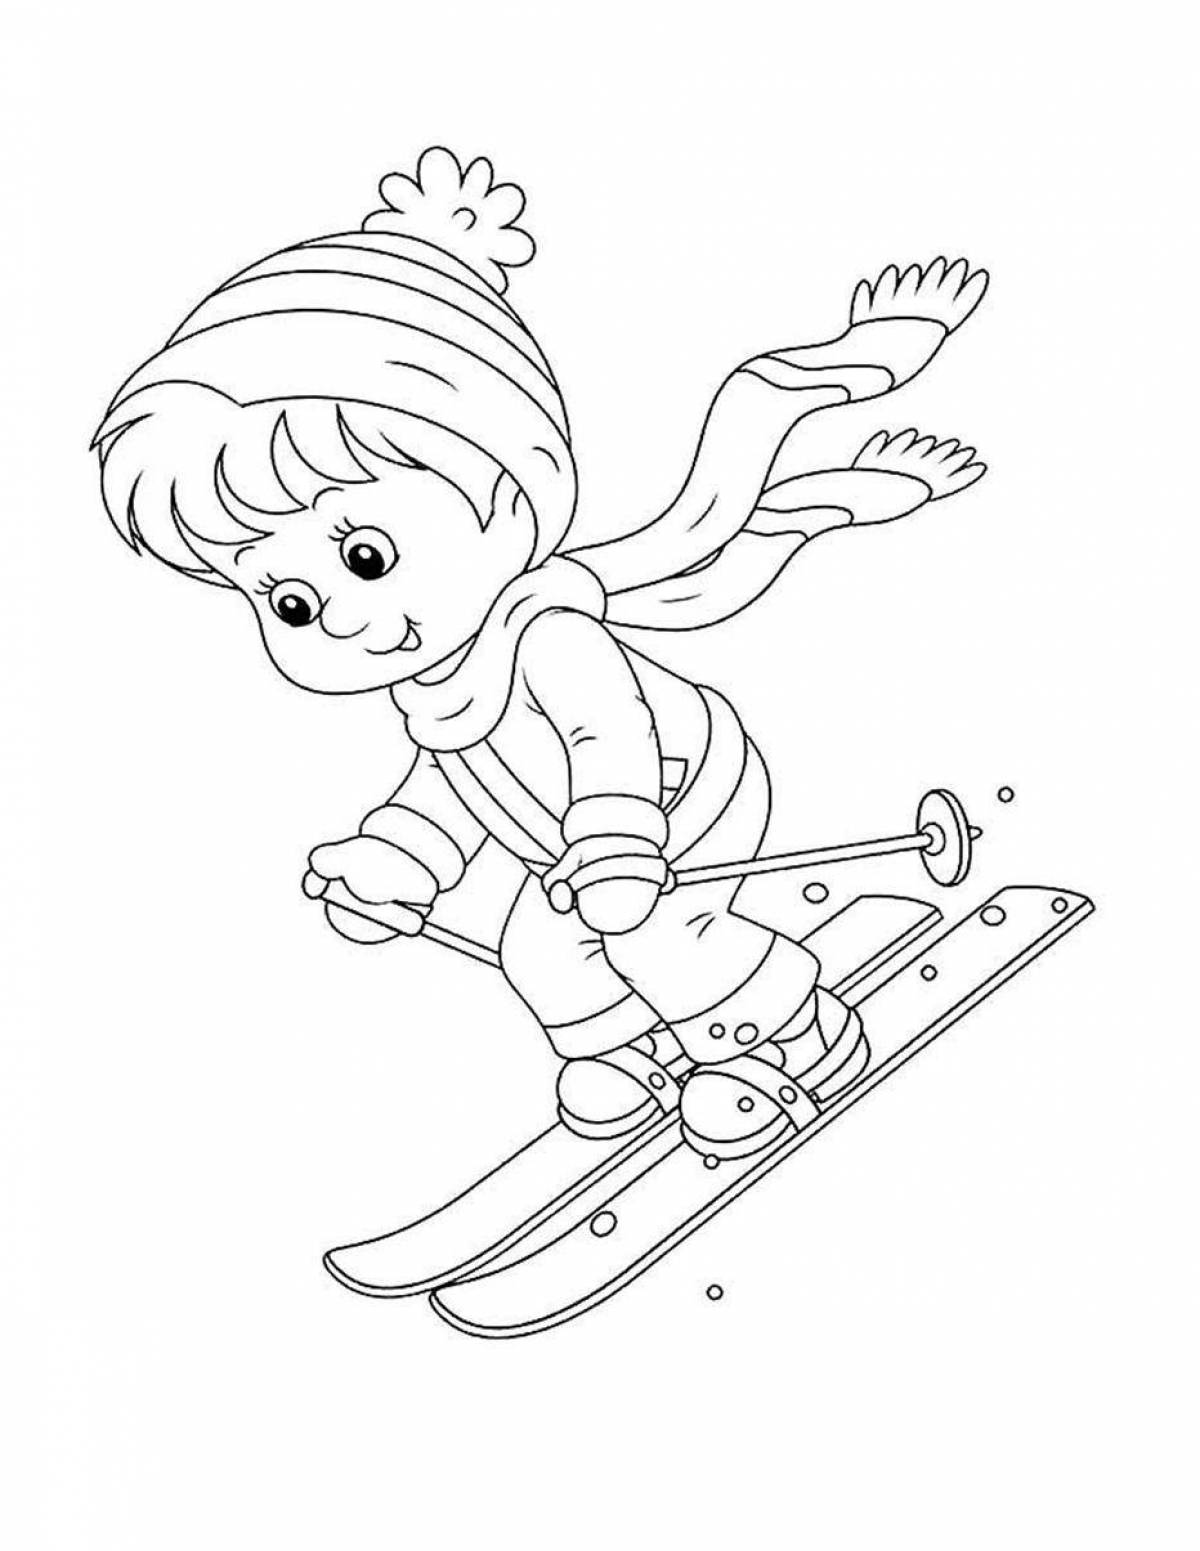 Радостная раскраска для детей на лыжах